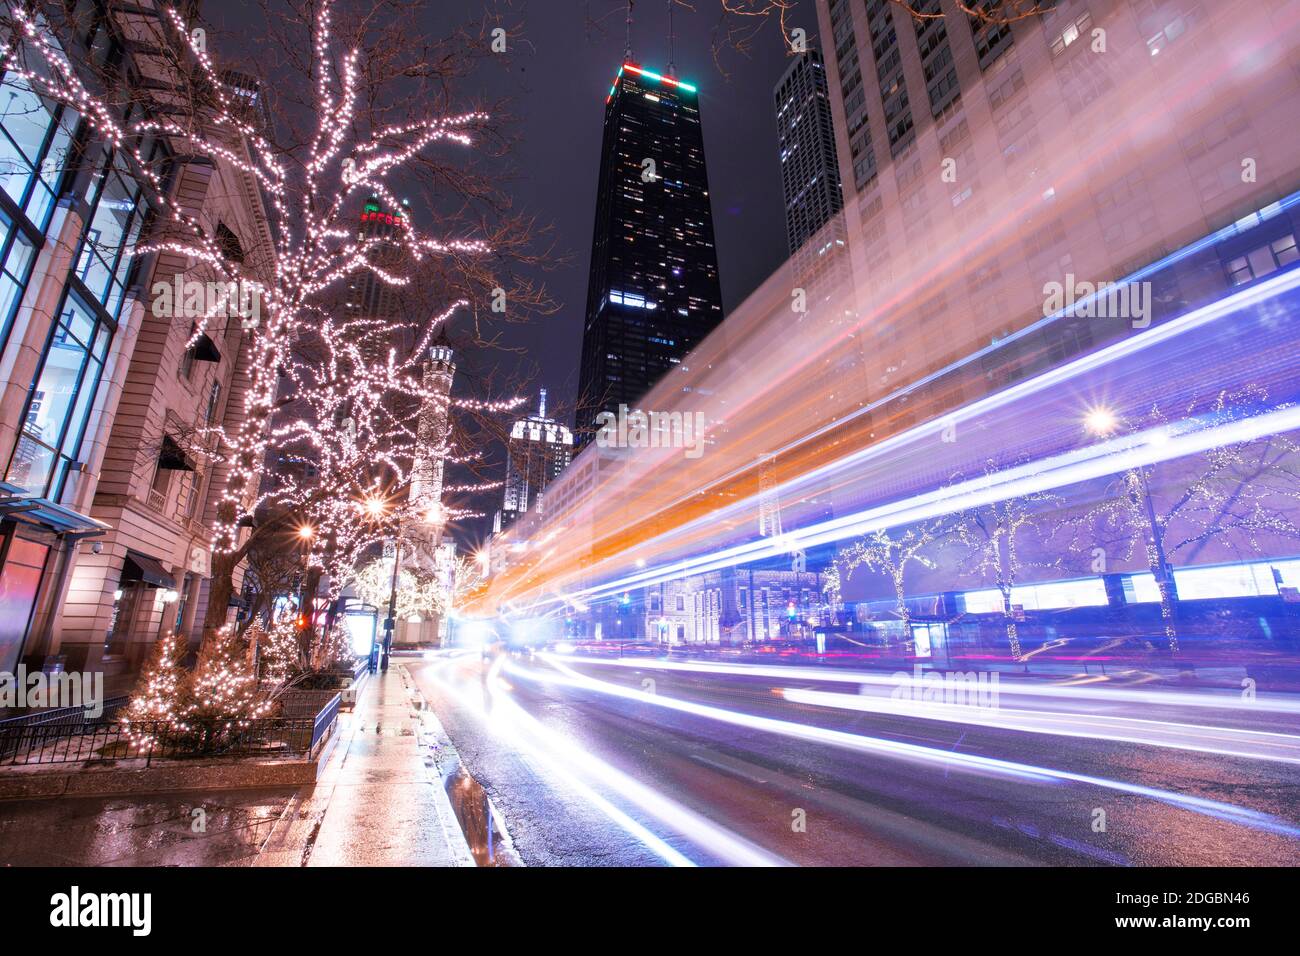 Luci e decorazioni natalizie, Michigan Street, Chicago, Illinois, USA Foto Stock